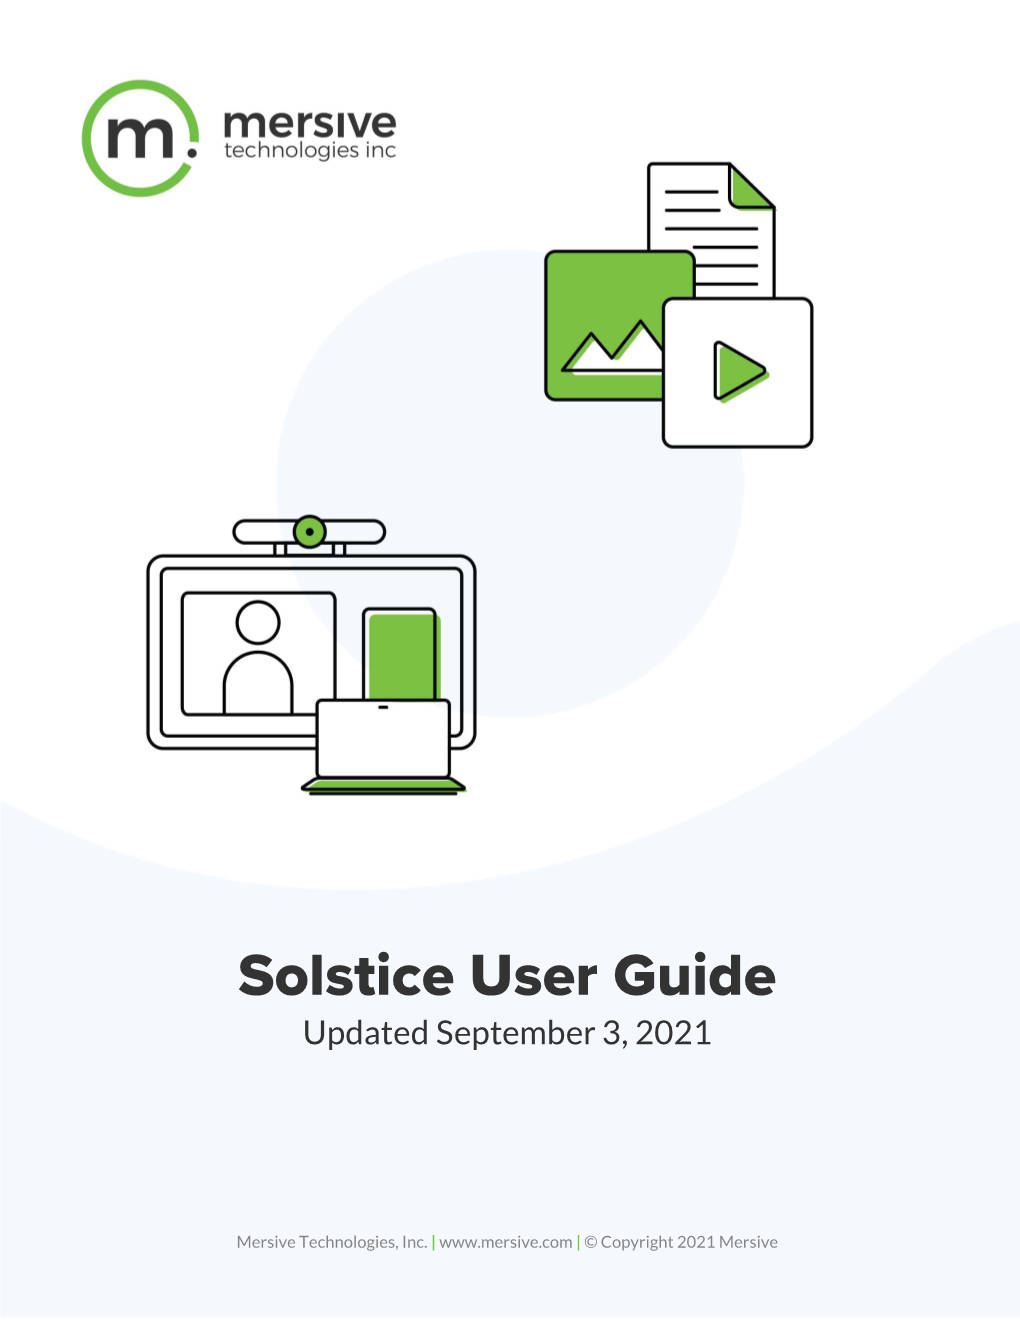 Mersive Solstice User Guide